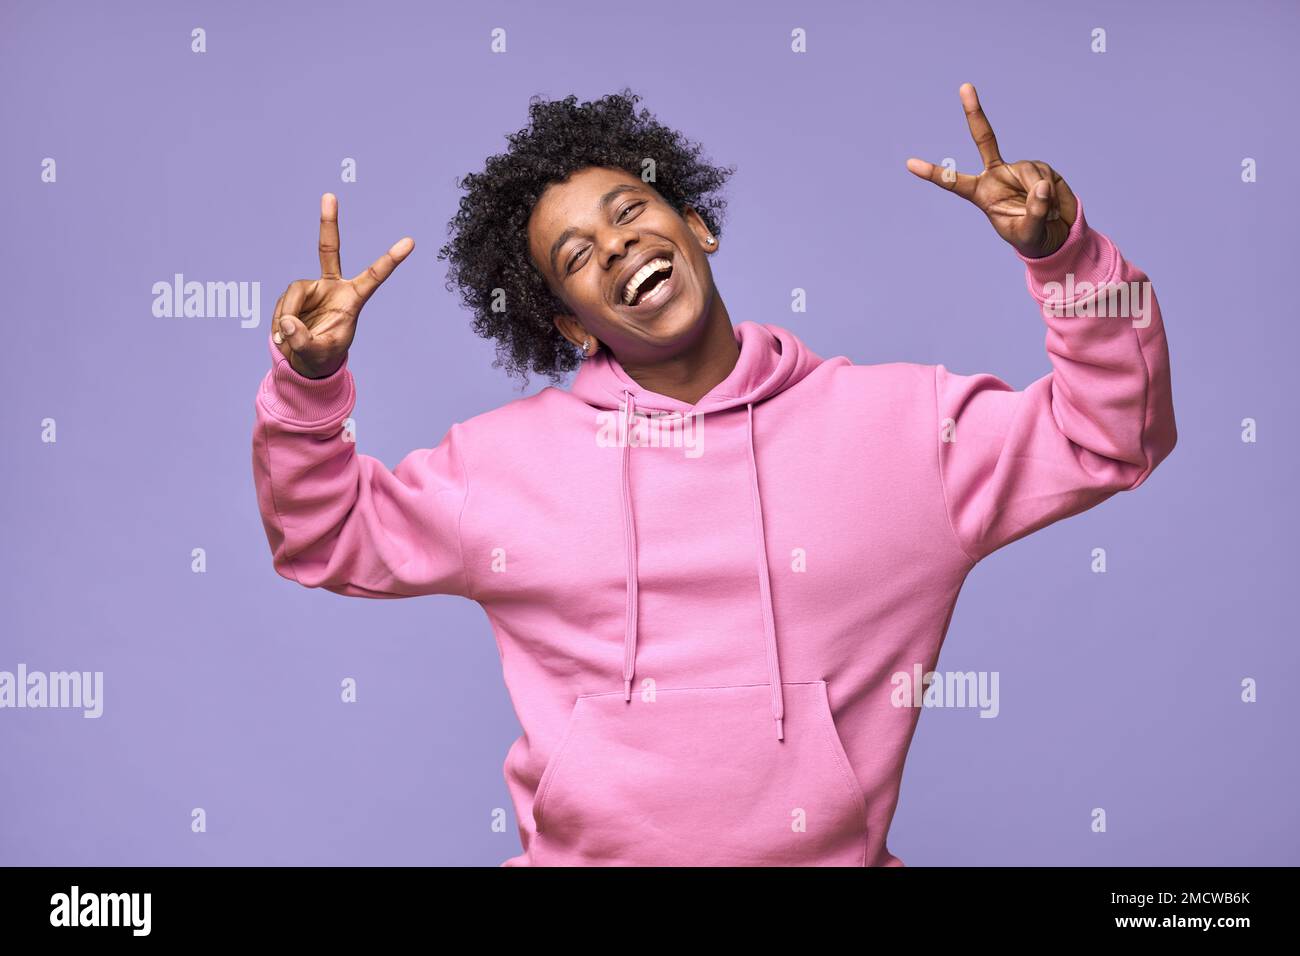 Ein fröhlicher, cooler afroamerikanischer Teenager, der ein Friedenszeichen zeigt, isoliert auf lila. Stockfoto